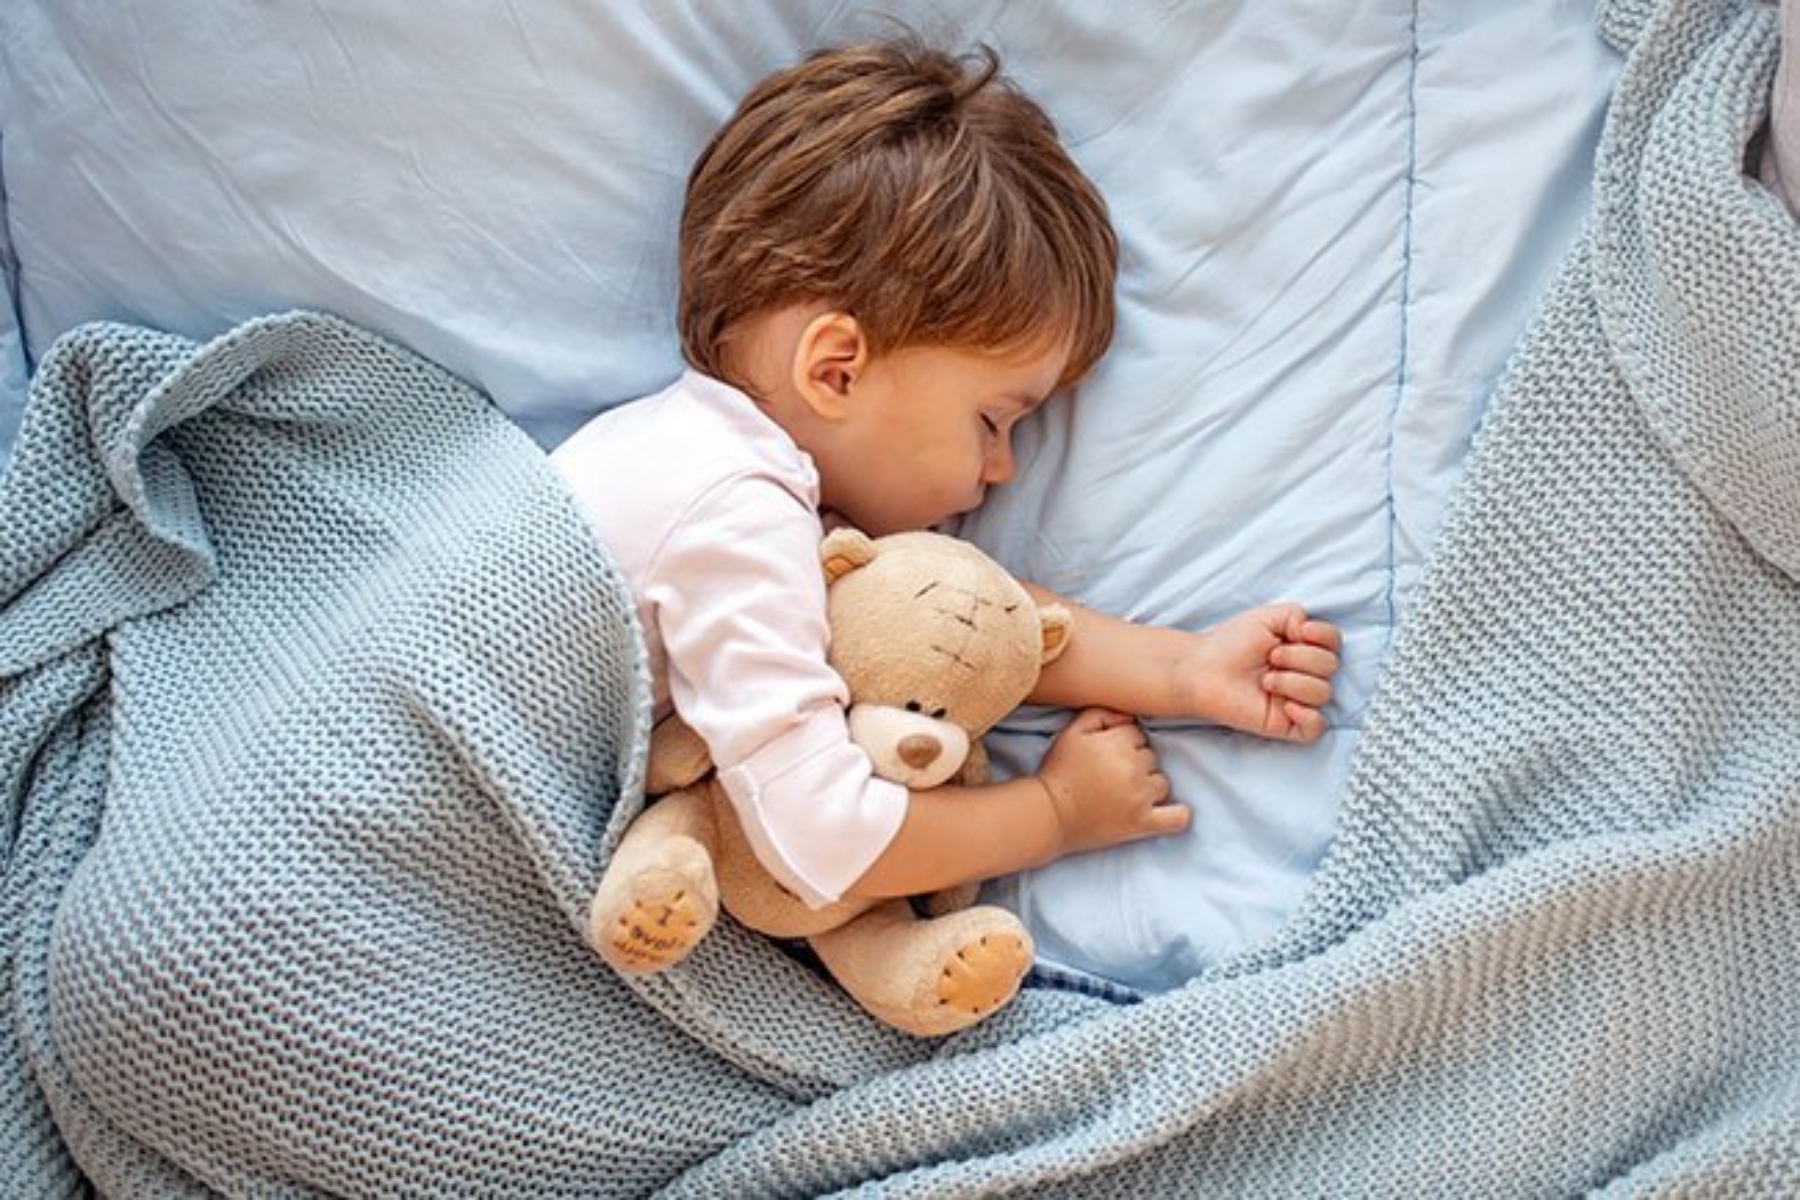 Μελέτη ύπνος: Σημαντικός ο προγραμματισμός του ύπνου στις μικρές ηλικίες